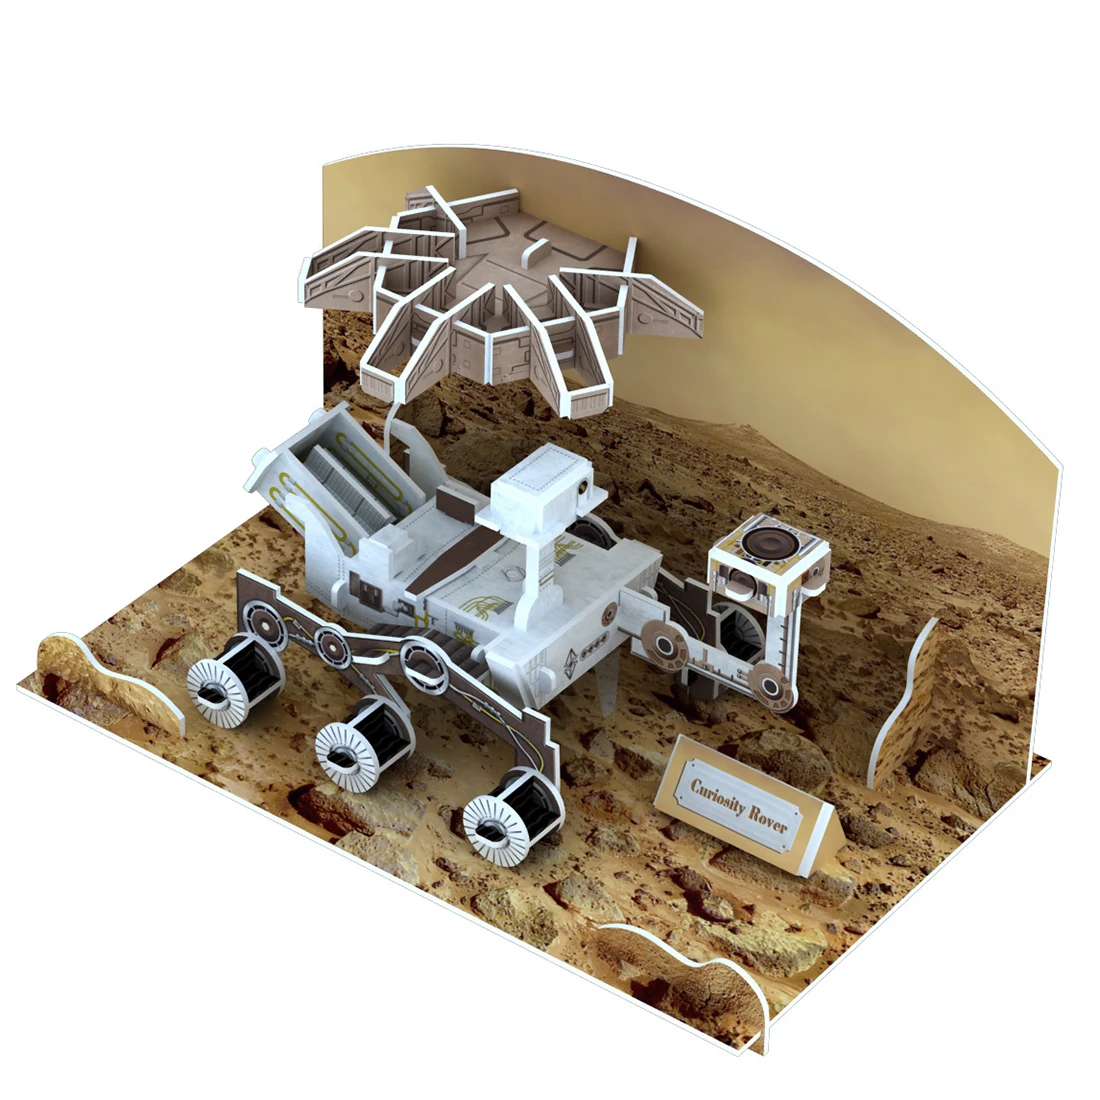 62 шт. Детский 3D бумажный трекер в космосе модель головоломка DIY сборка игрушка-Возраст 6 + открыть небо подарок